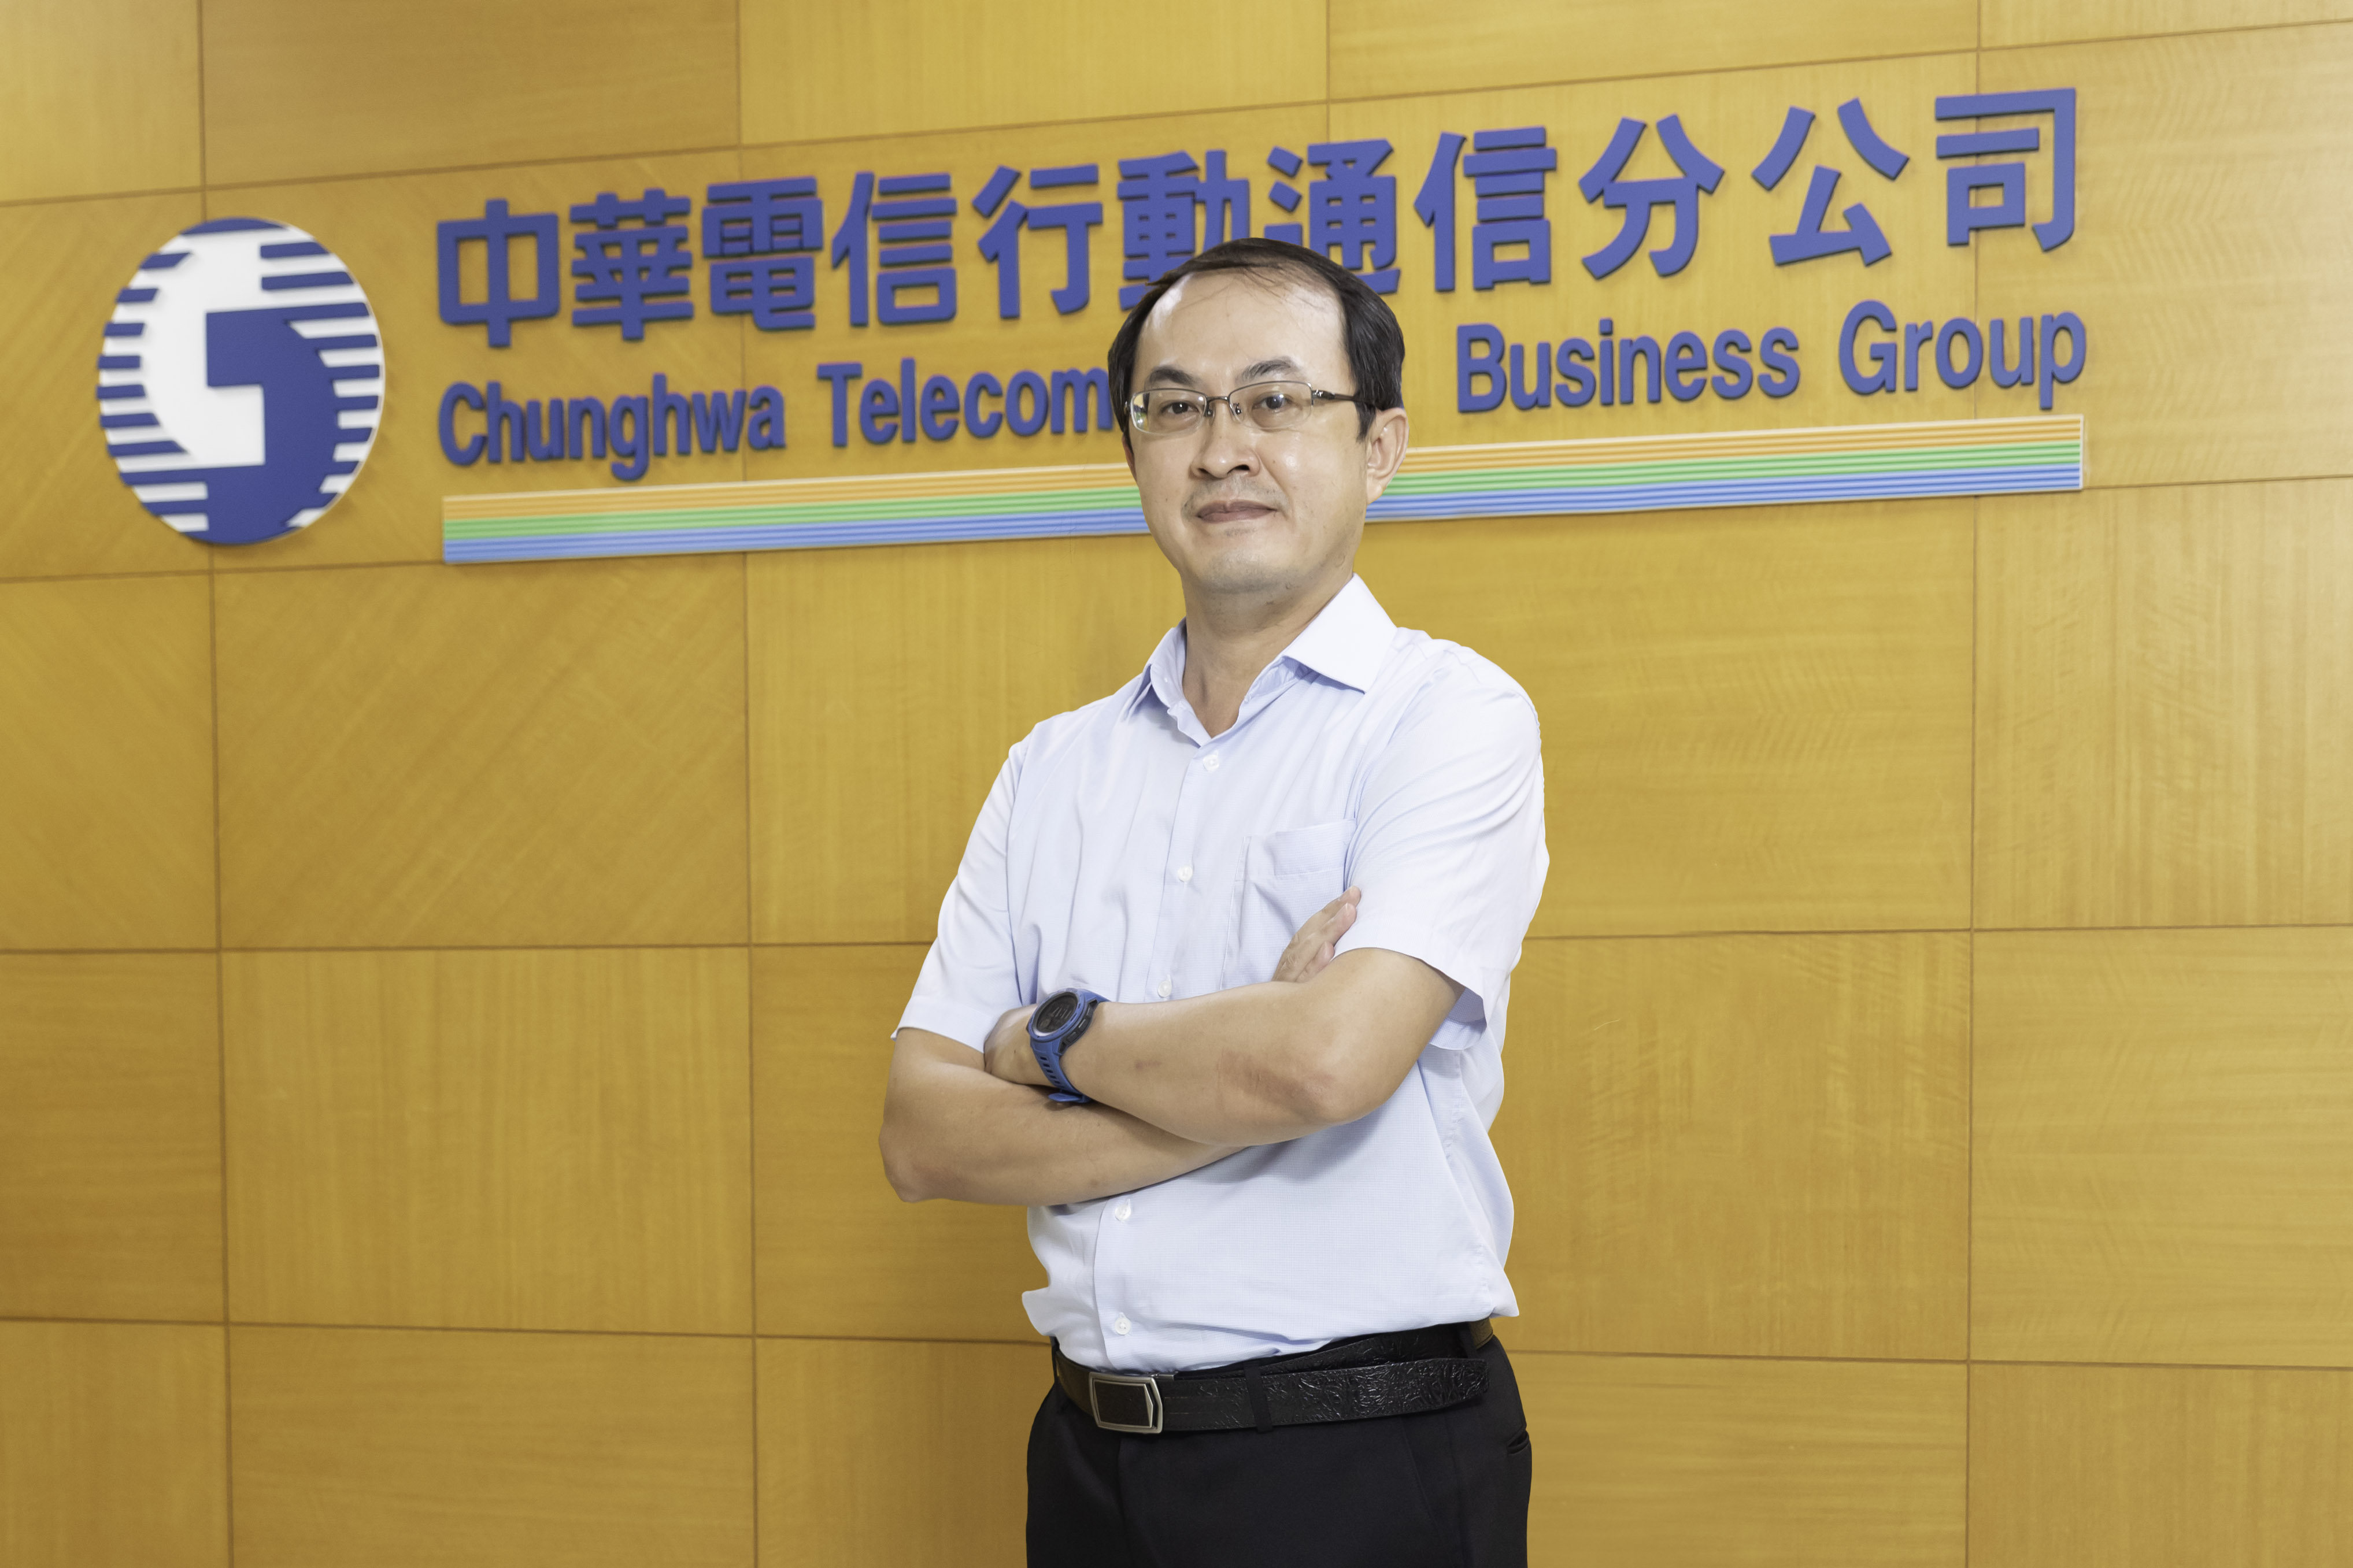 中華電信產品行銷經理王升翰